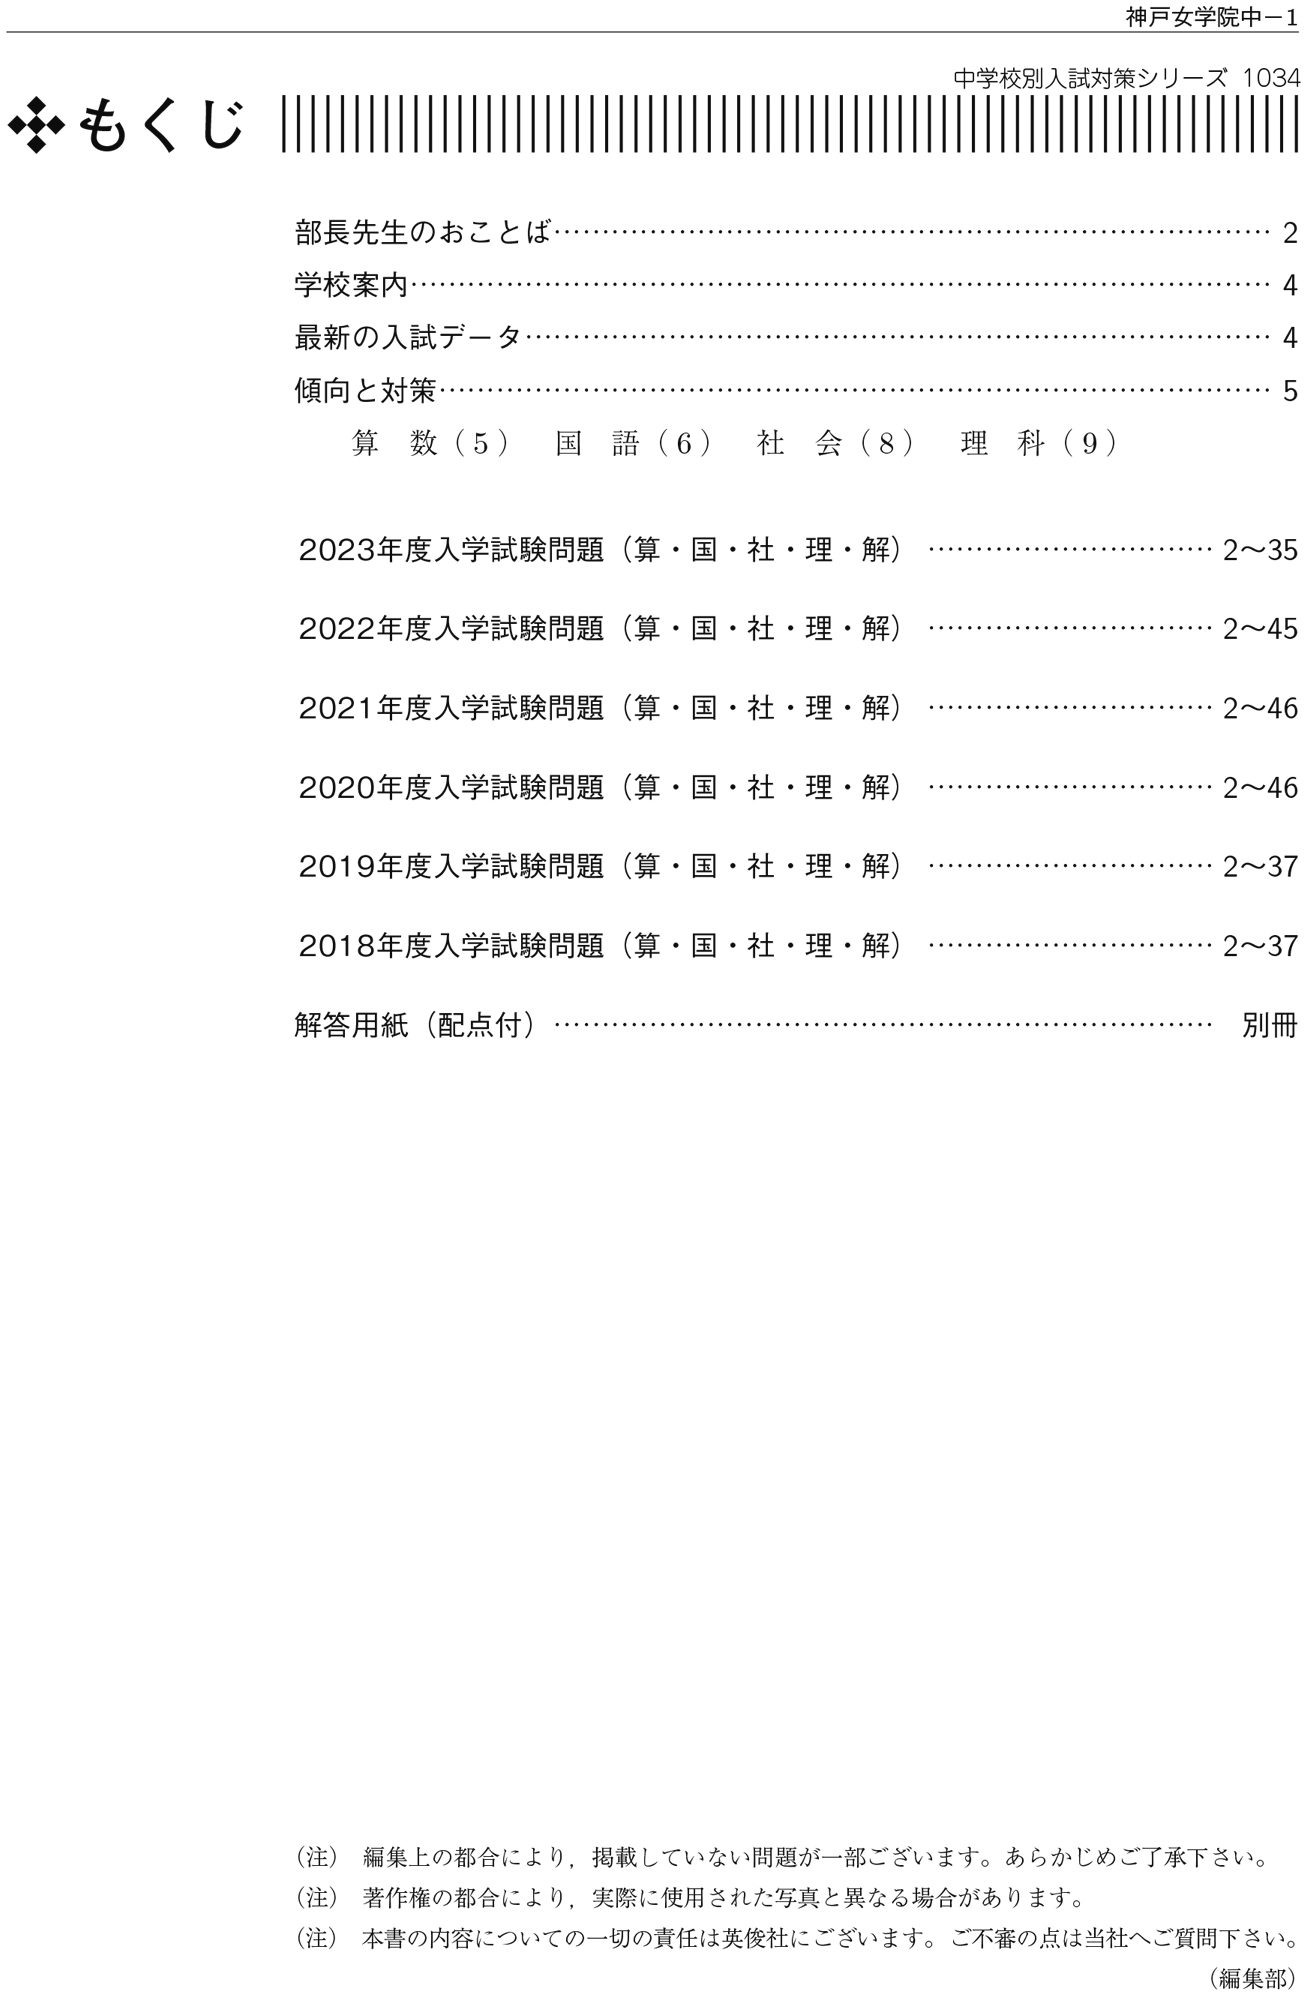 神戸女学院中学部 赤本 平成19年(2007年)度　過去問